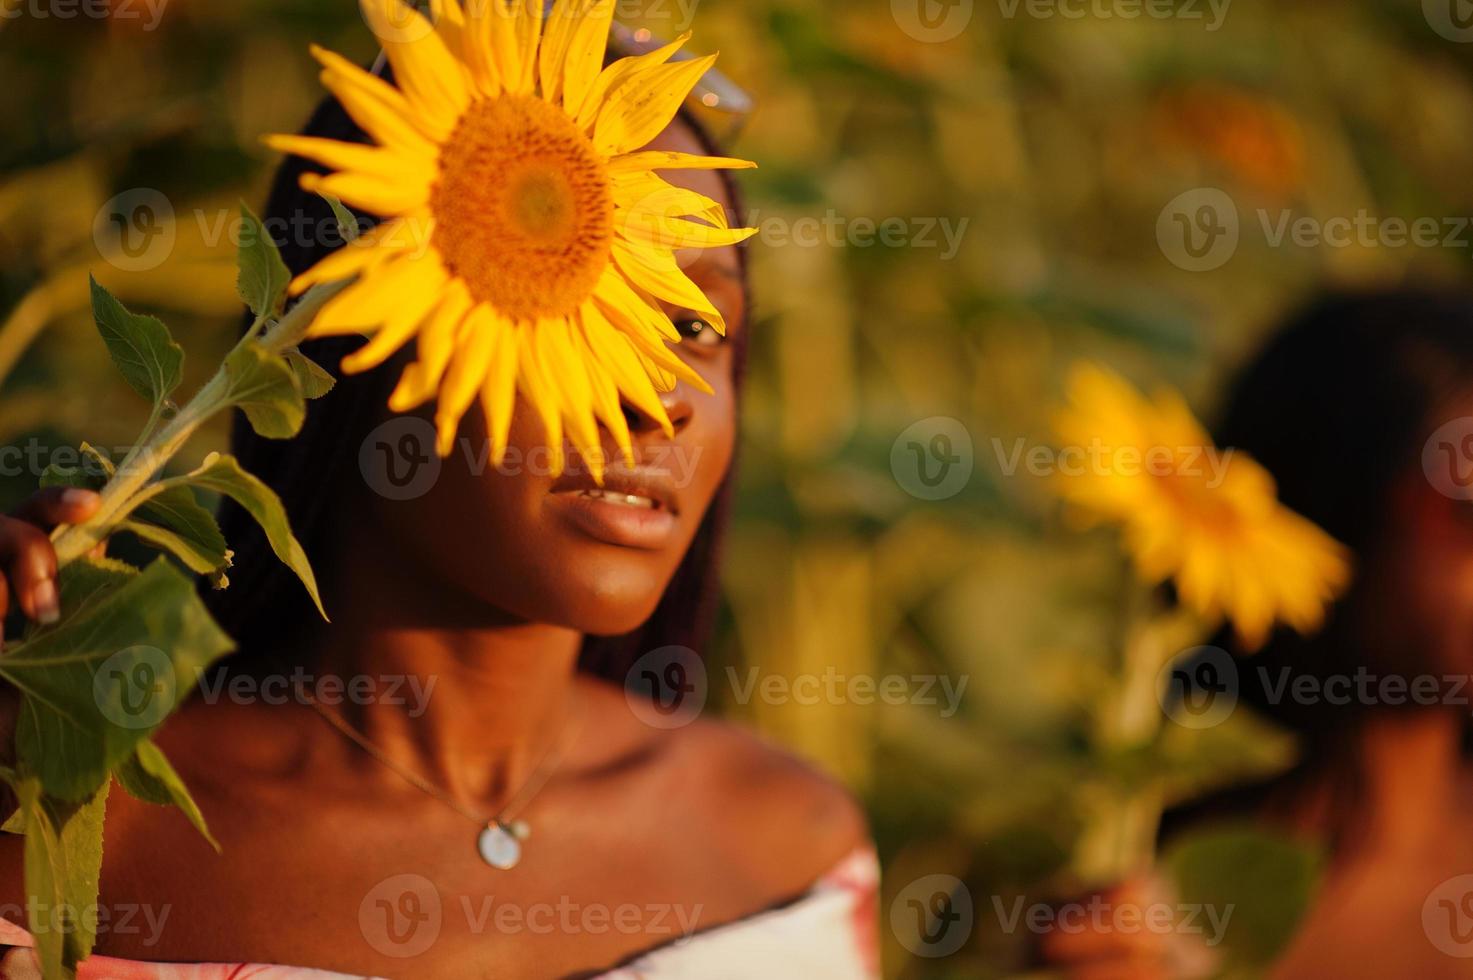 zwei hübsche junge schwarze Freunde Frau tragen Sommerkleid Pose in einem Sonnenblumenfeld. foto